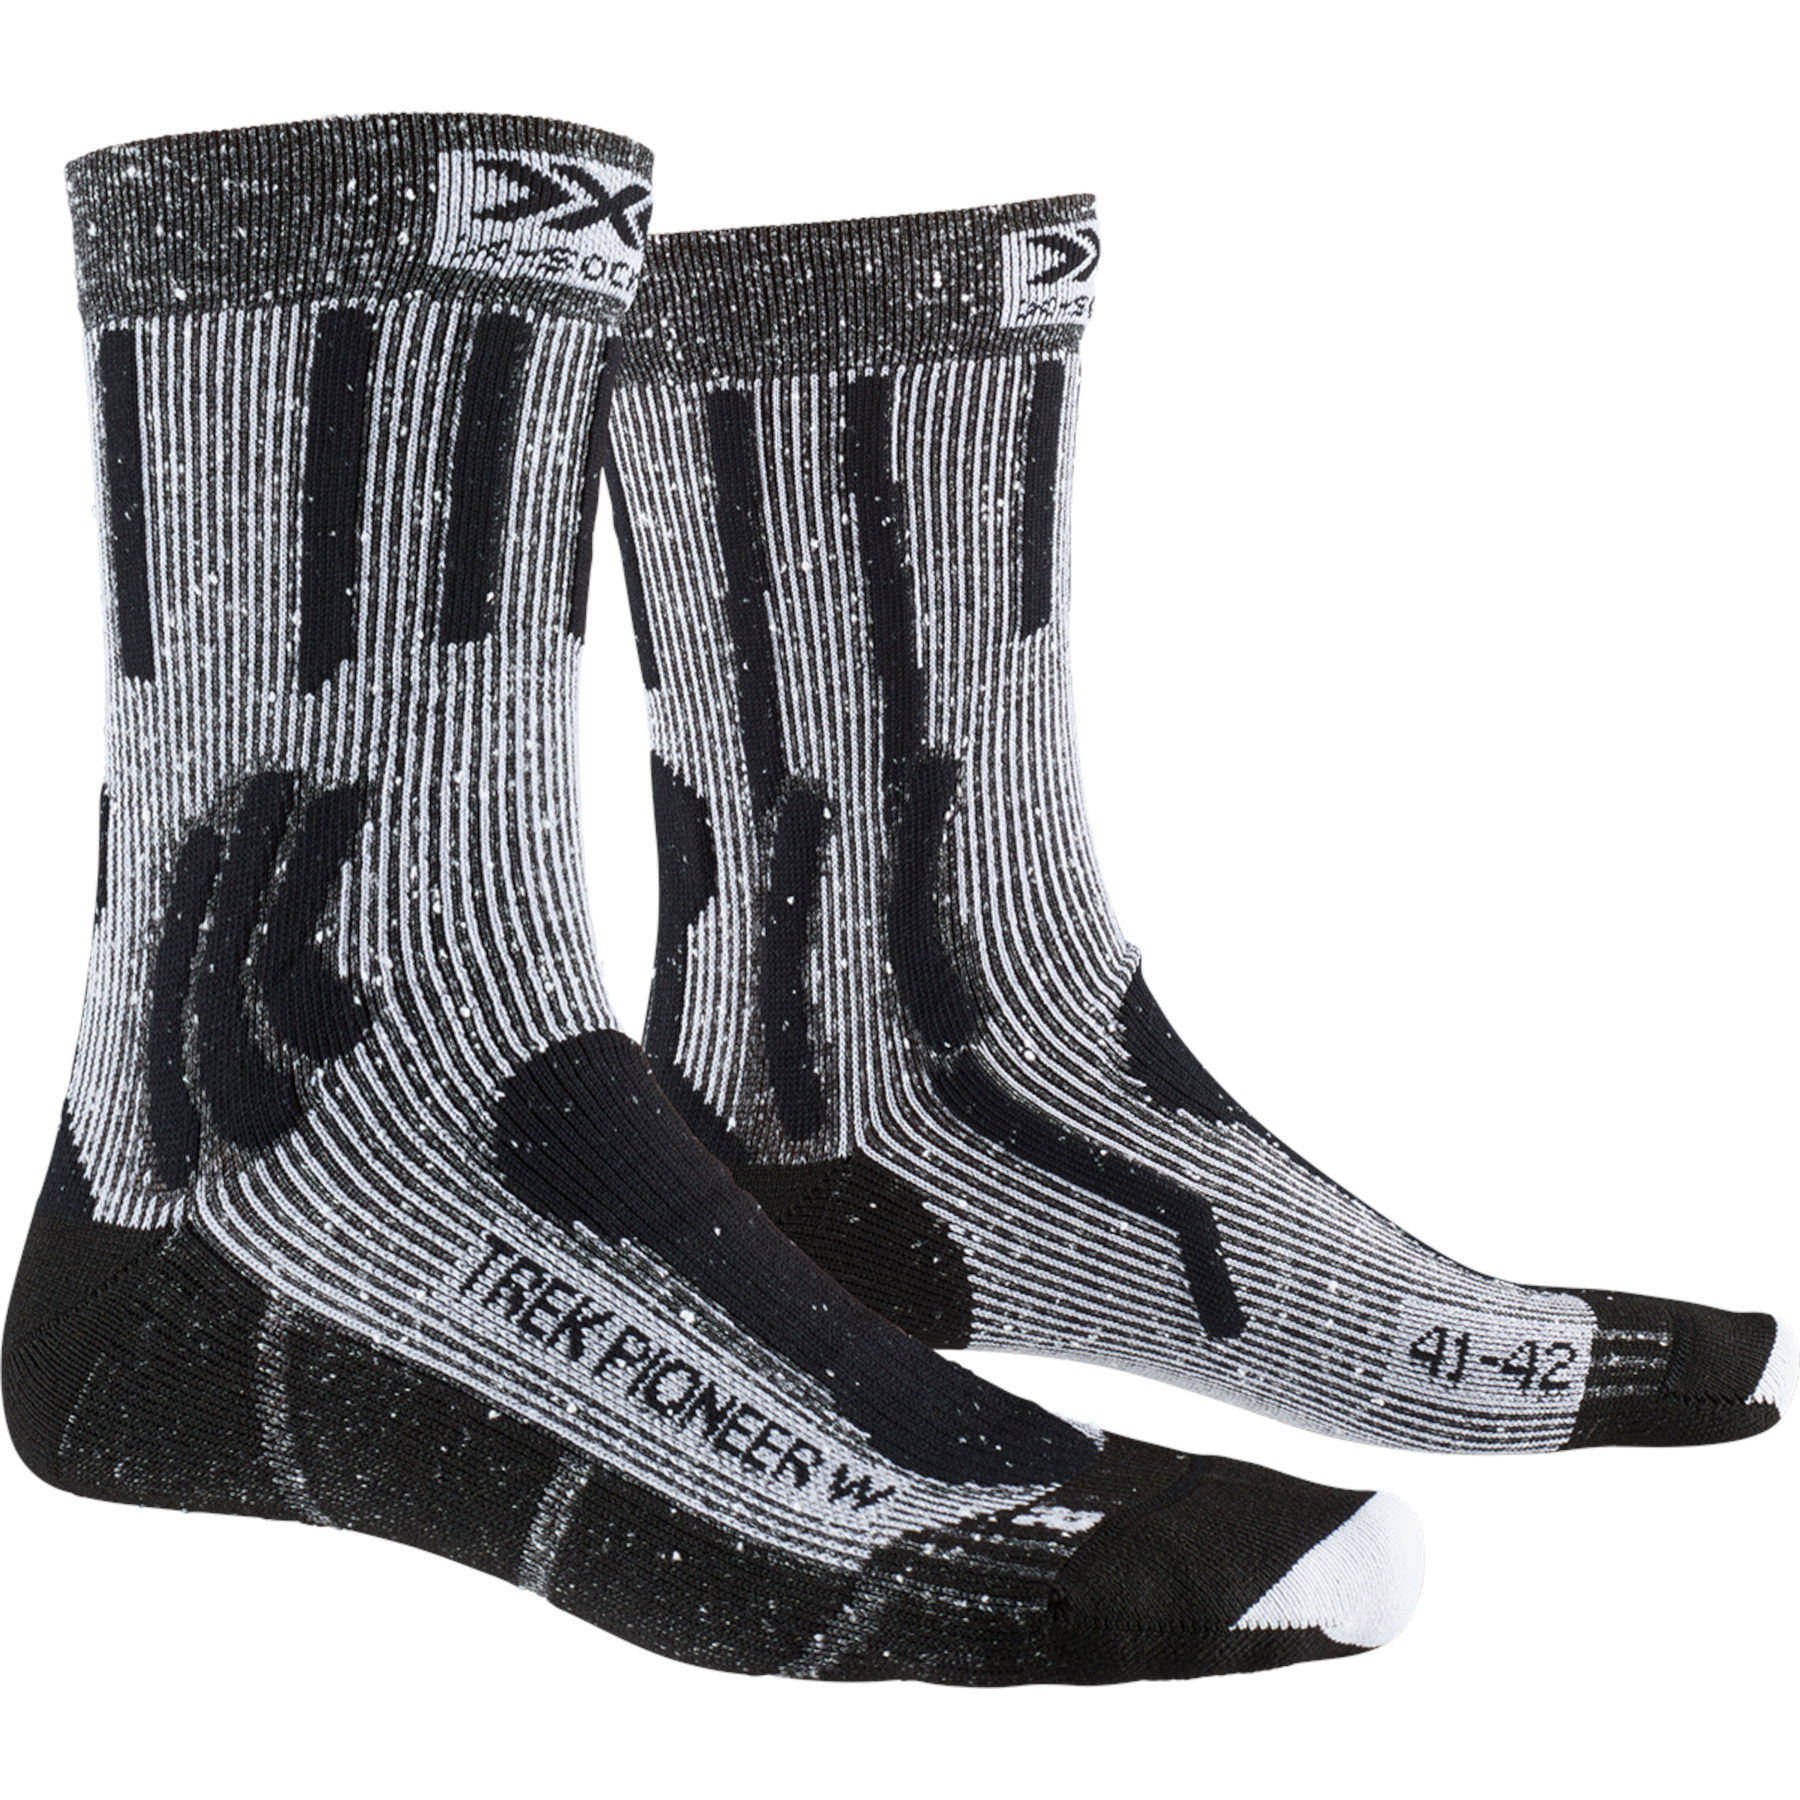 Produktbild von X-Socks Trek Pioneer Socken für Damen - opal black/flocculus white